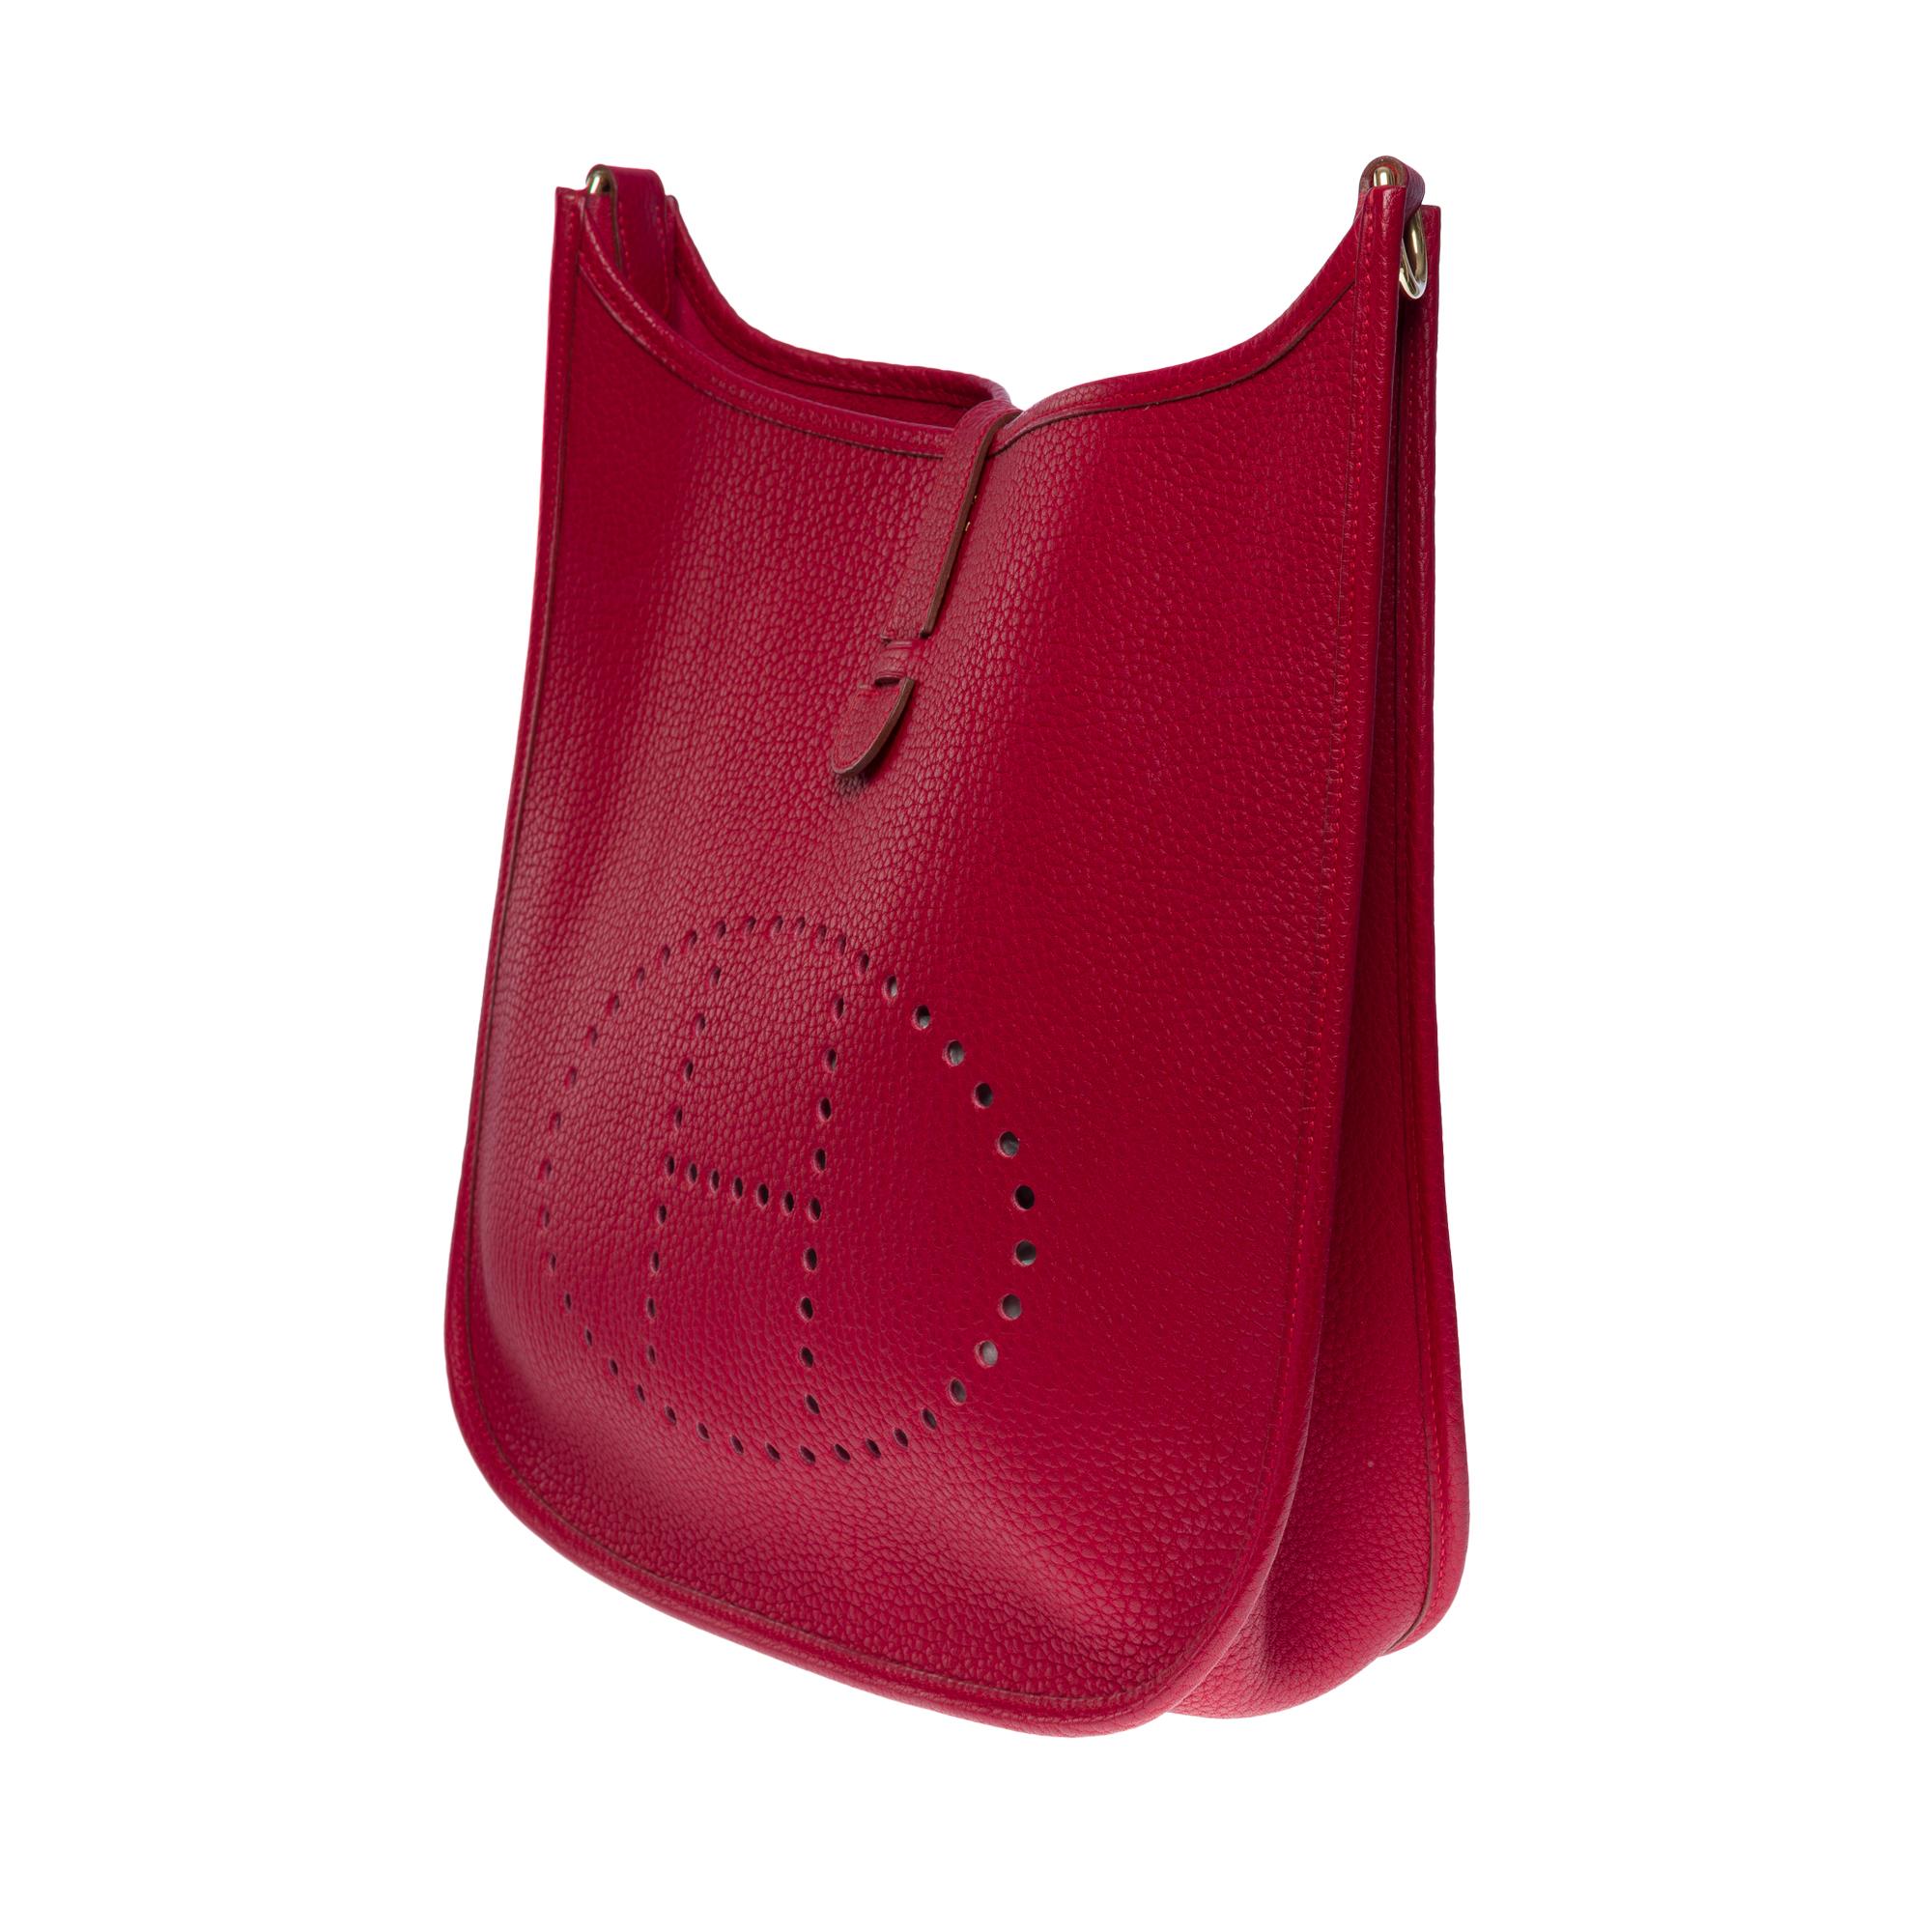 Gorgeous Hermès Evelyne 33 (GM)  shoulder bag in Red Casaque Togo leather, GHW For Sale 1